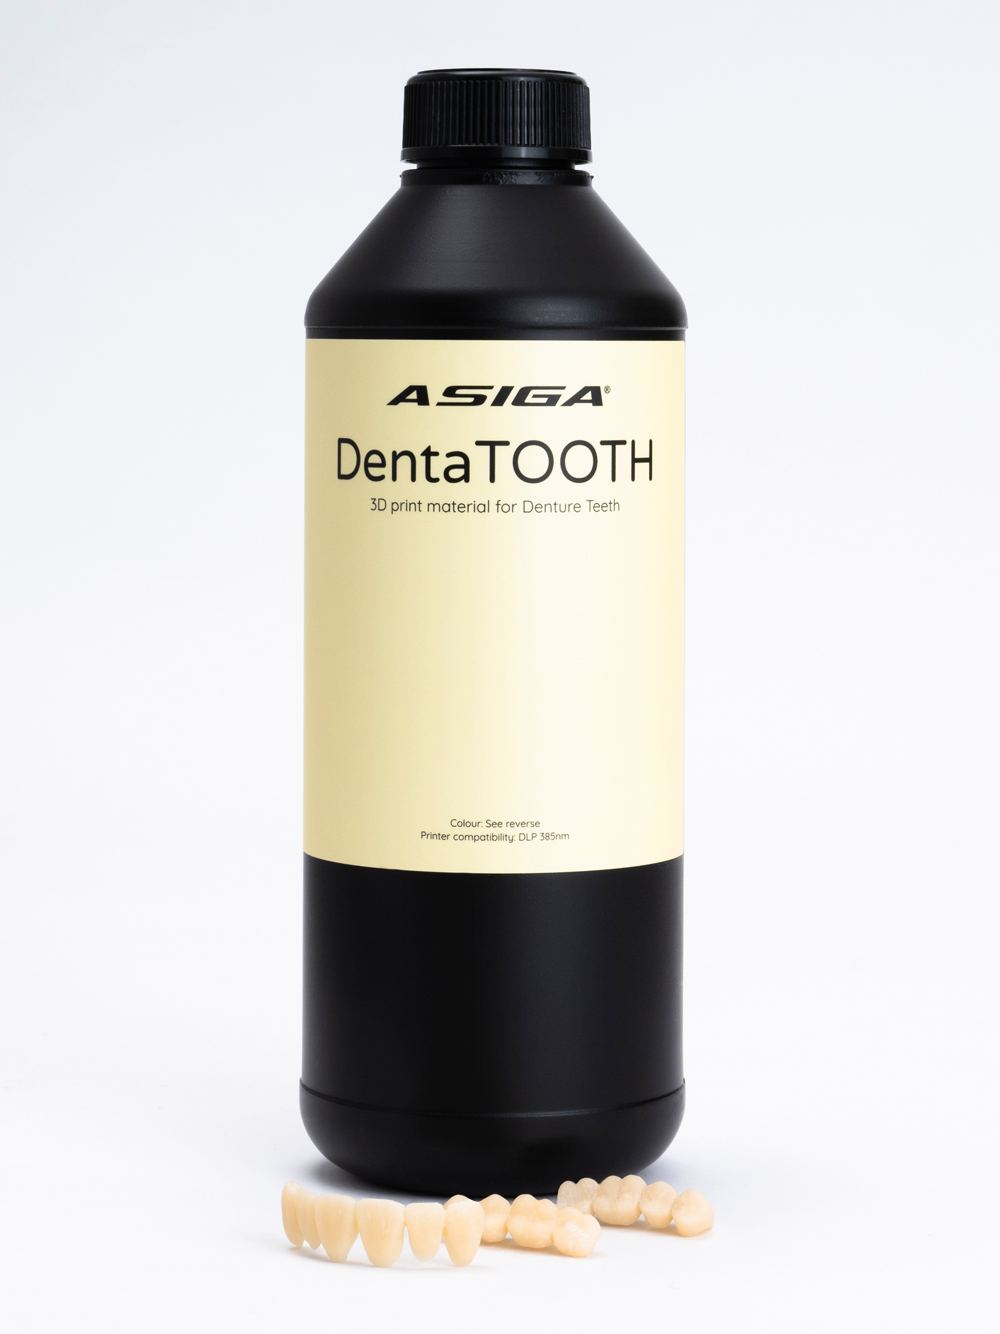 Asiga-DentaTOOTH-web